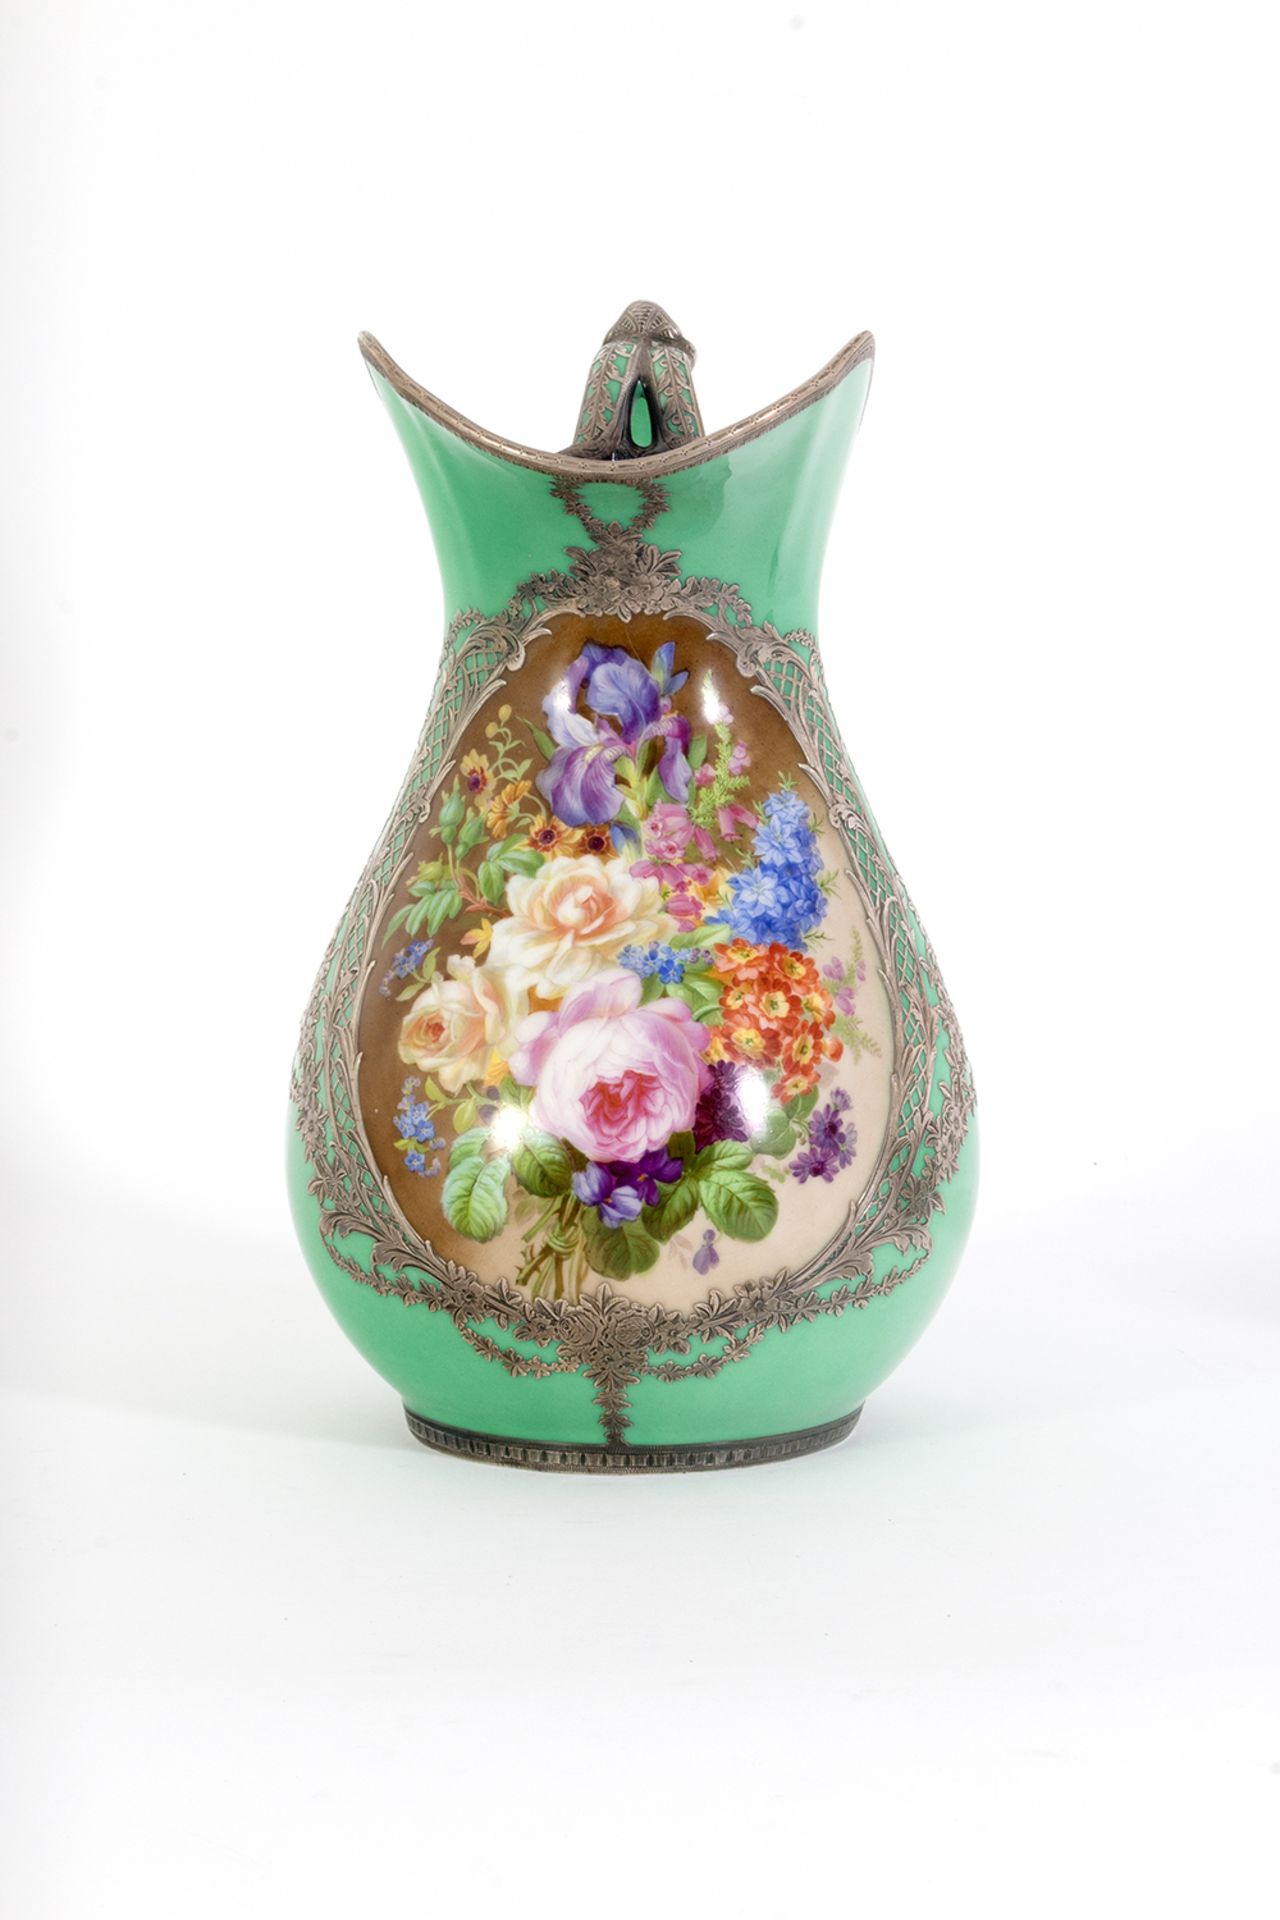 Conjunto de aguamanil, jofaina y cuenco en porcelana francesa estilo Sèvres con decoración floral y - Image 8 of 11